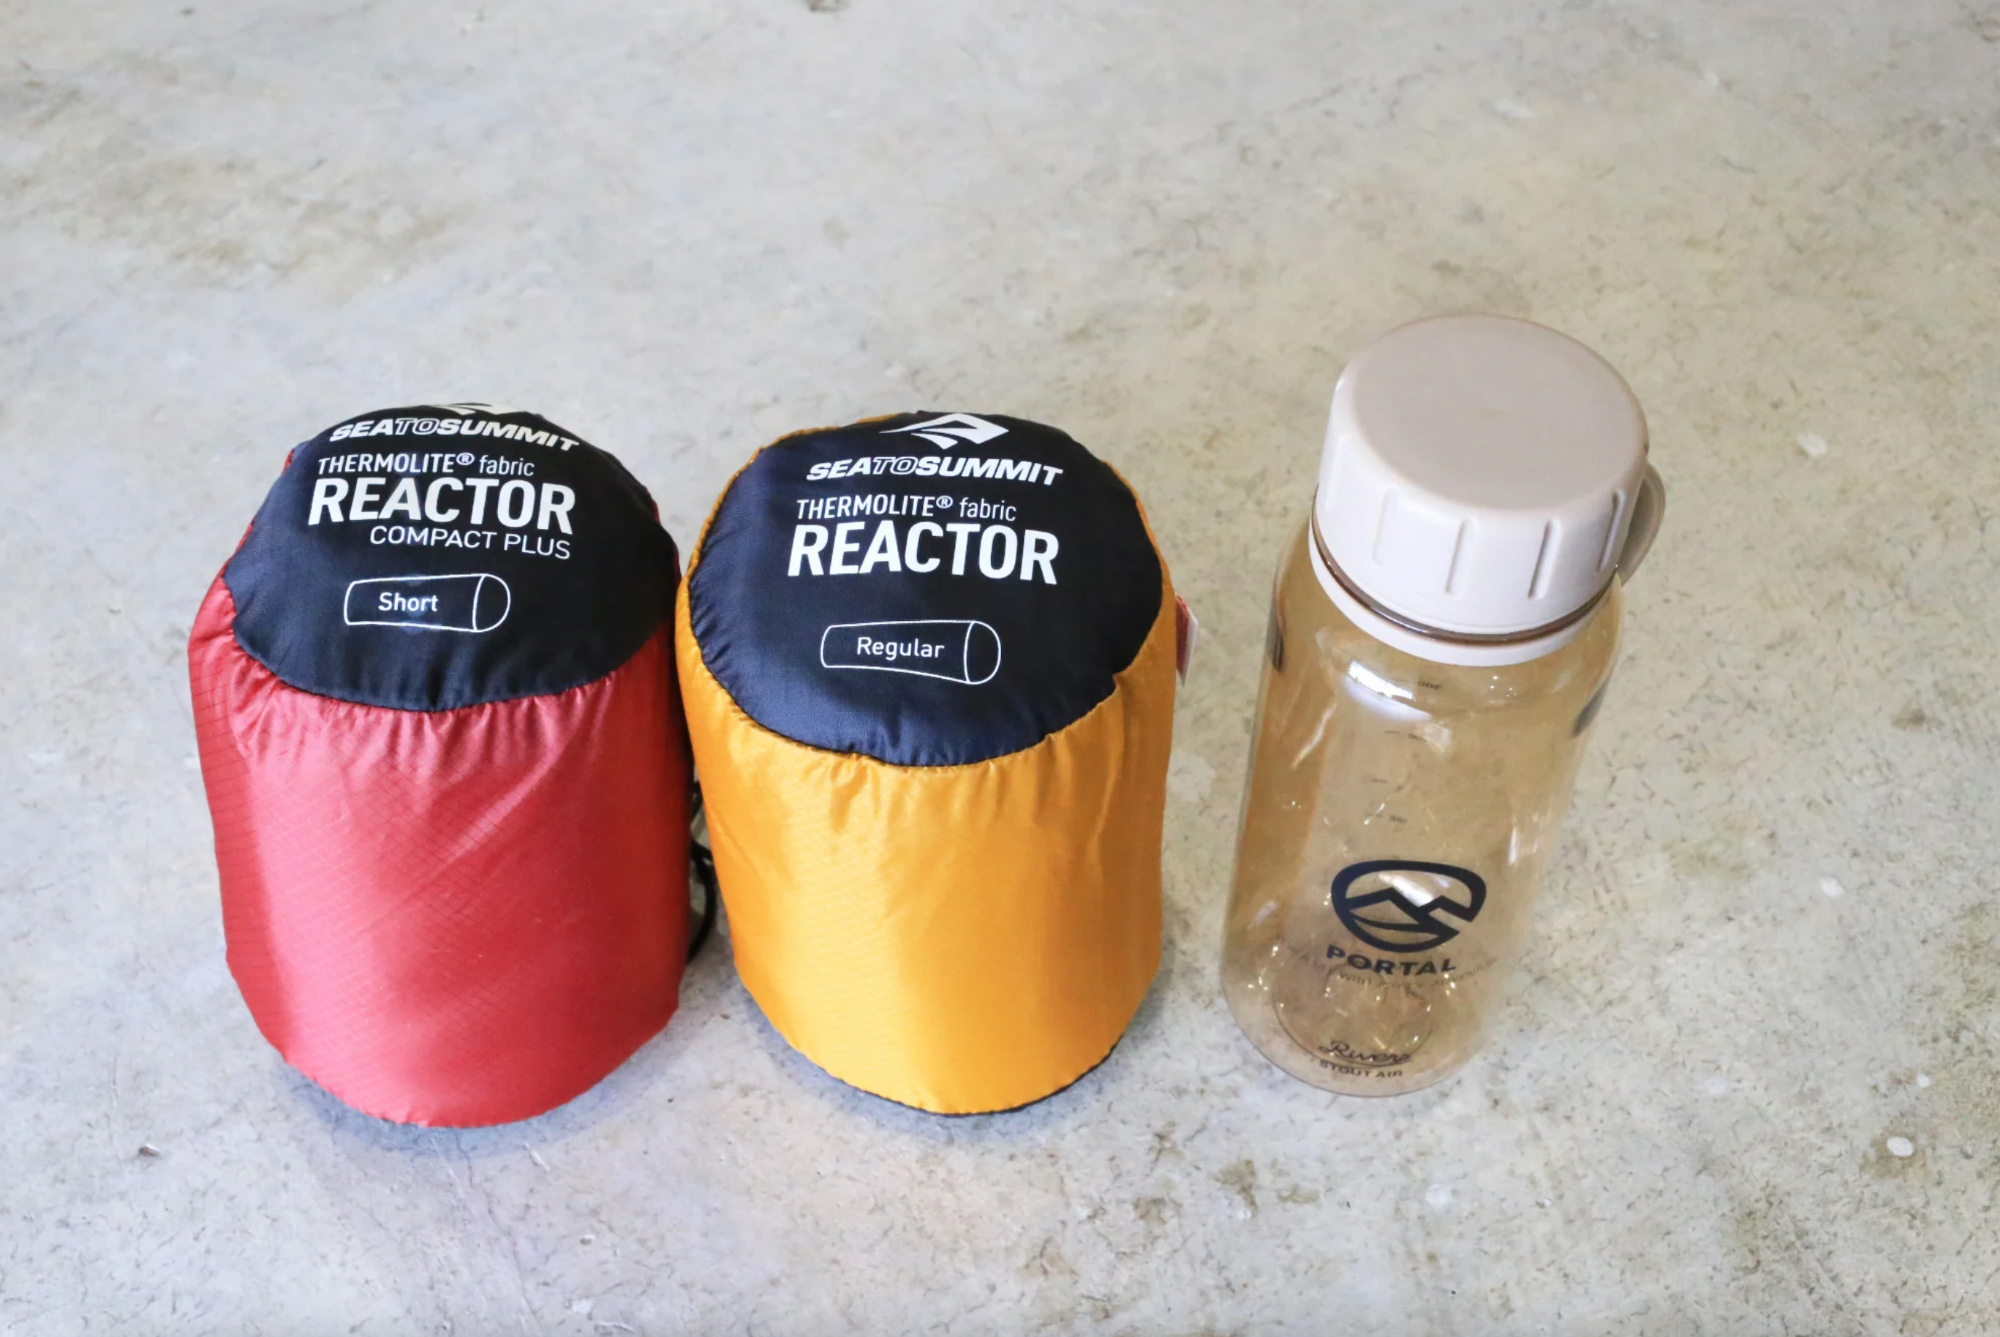  (左 : Thermolite Reactor Compact Plus / 右 : Thermolite Reactor )550mlのボトルと比較してもコンパクトです。 